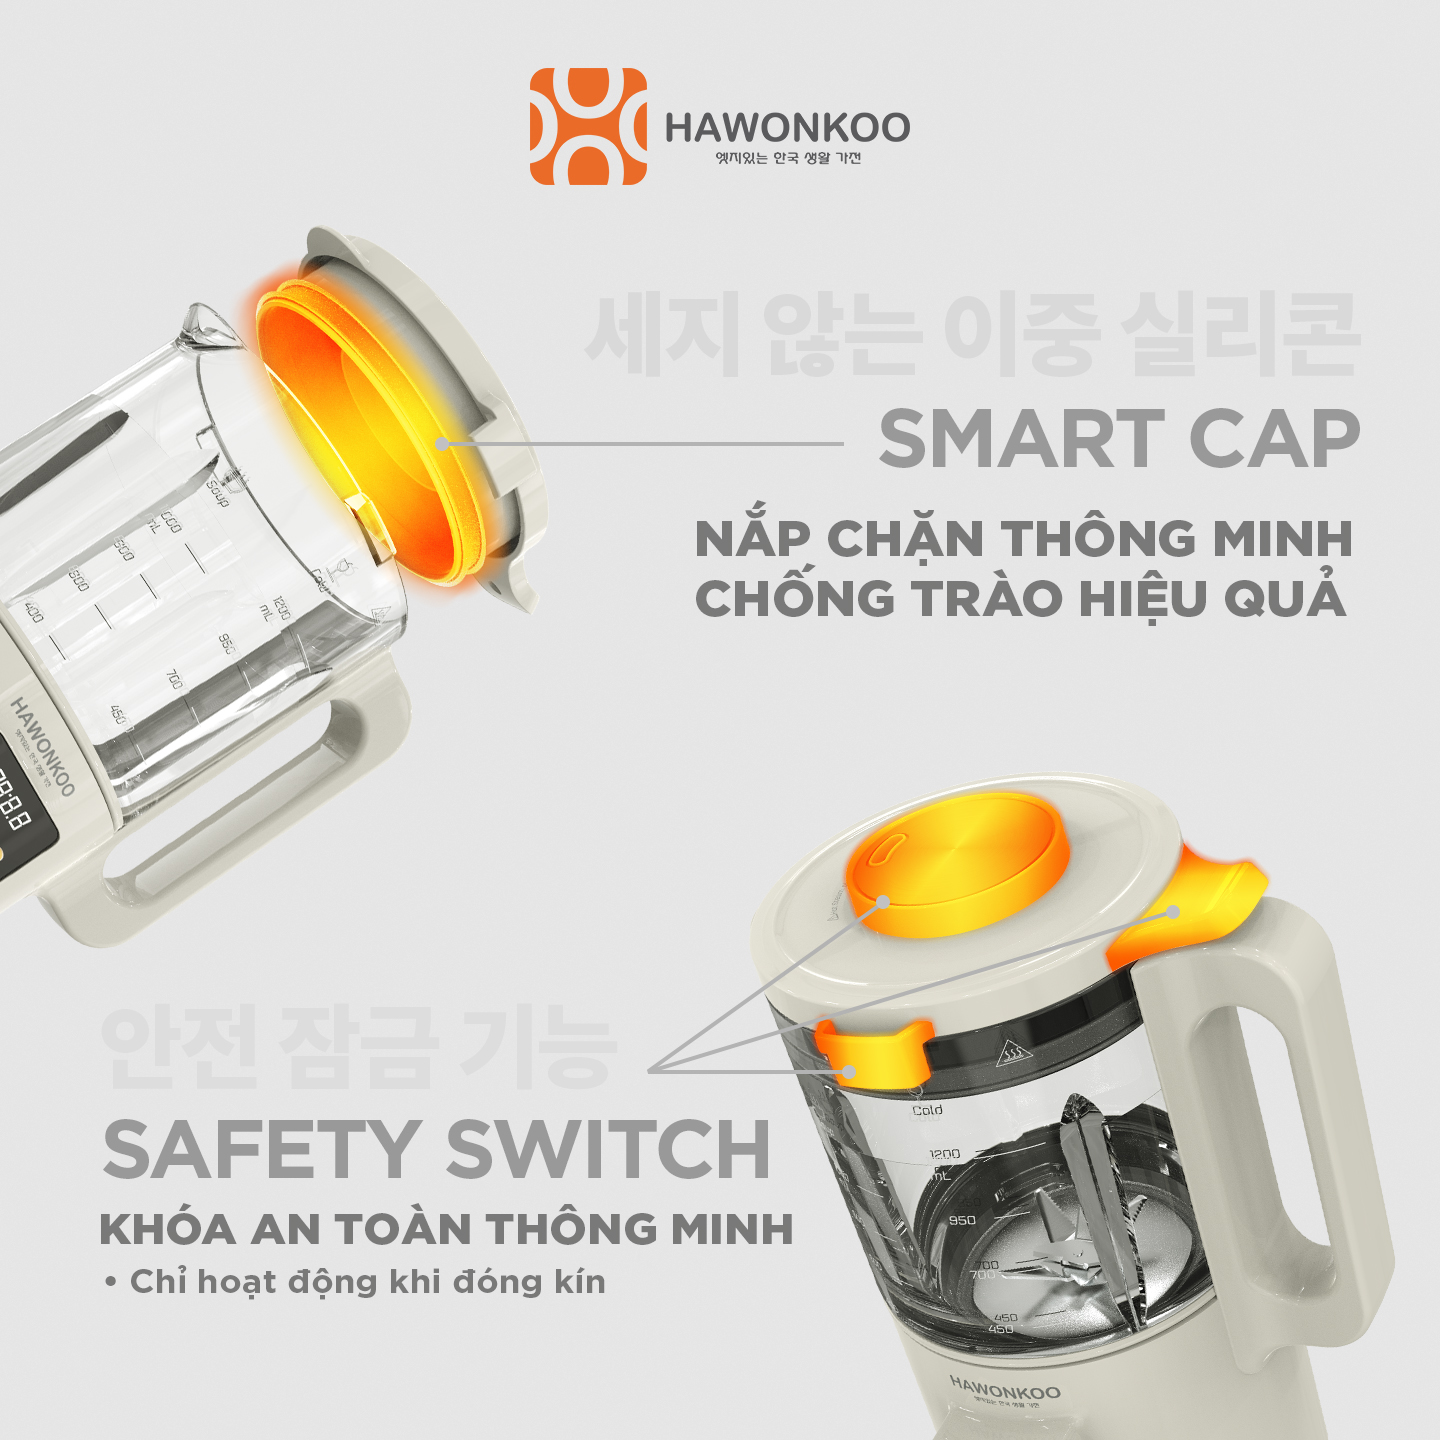 Máy Làm Sữa Hạt Hawonkoo SMH-121 10 chế độ nấu 900W 1200ML Hàng Chính Hãng Bảo Hành 12 Tháng - Thương Hiệu Hàn Quốc